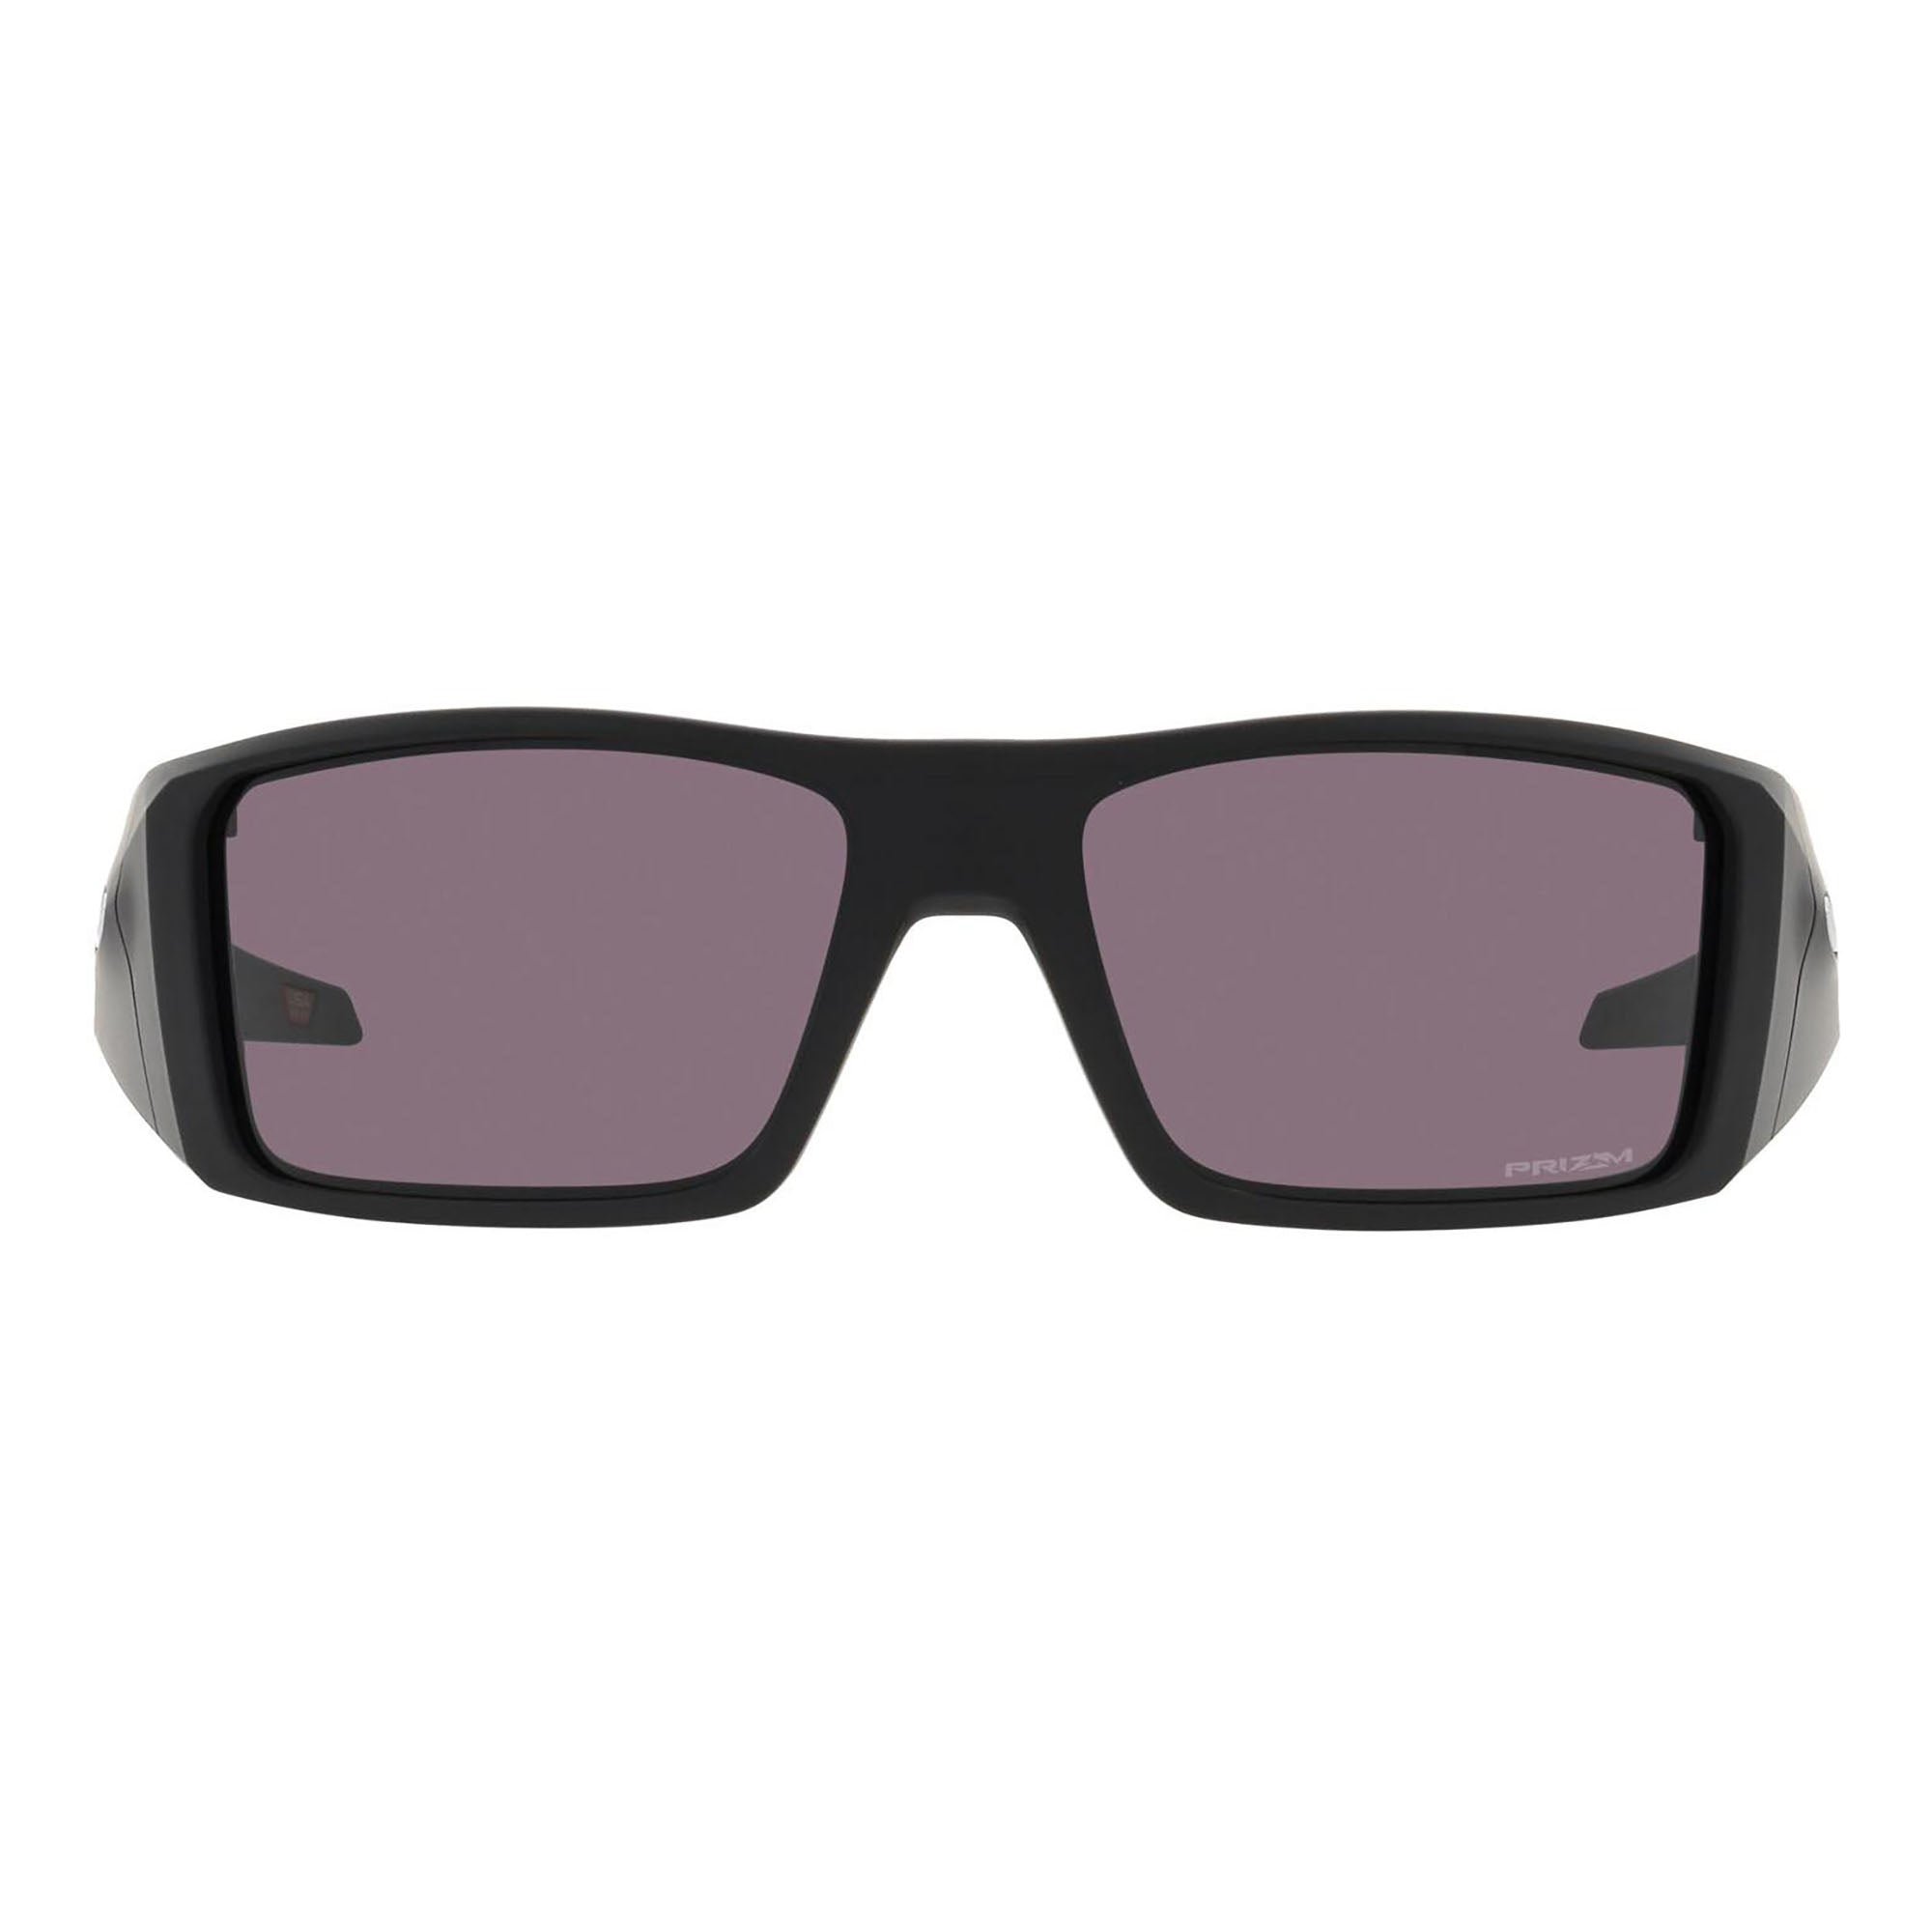 Prescription Sunglasses - Customized Clarity